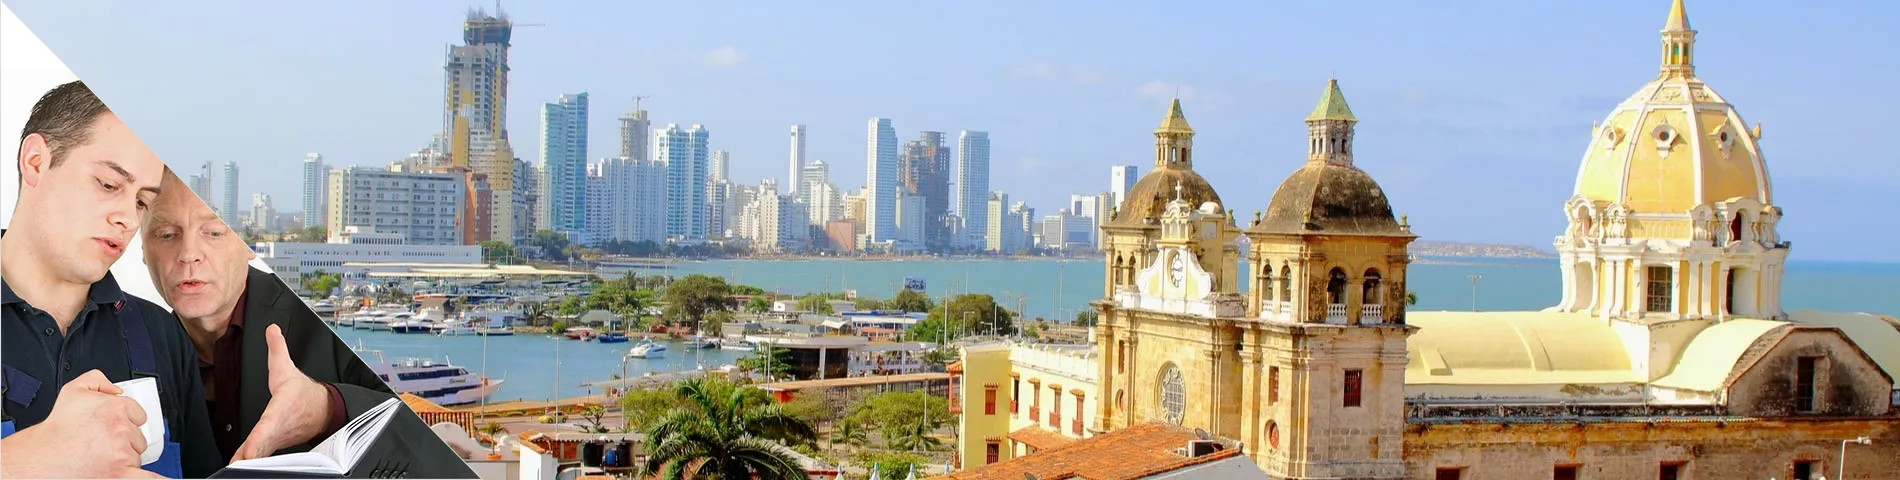 Cartagena - Einzelunterricht